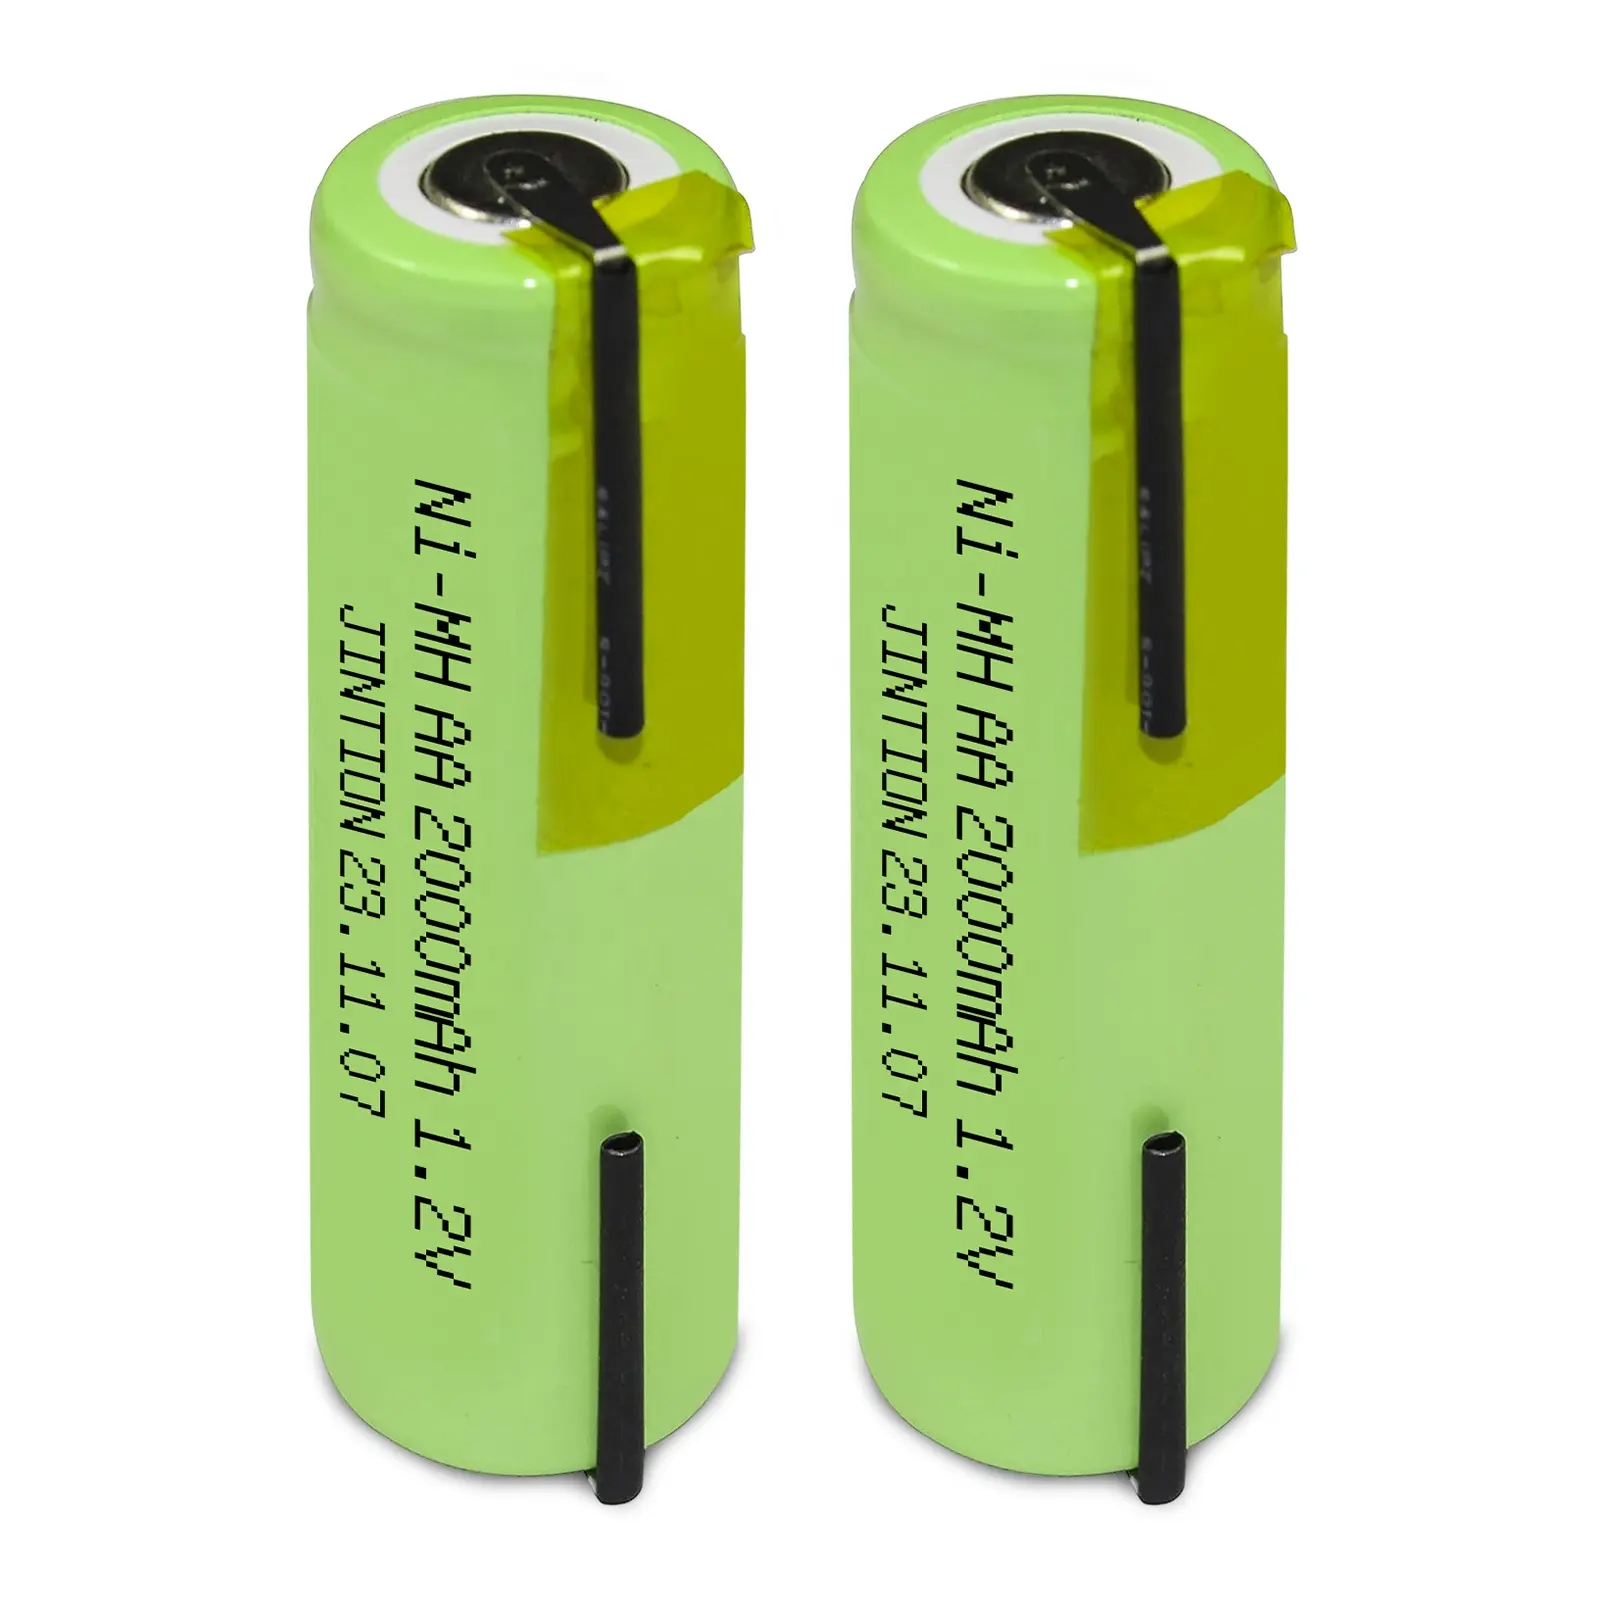 JINTION AA 2000mAh 1.2v nimh bateria de recarga nimh baterias recarregáveis para Braun 5000 3745 3761 3762